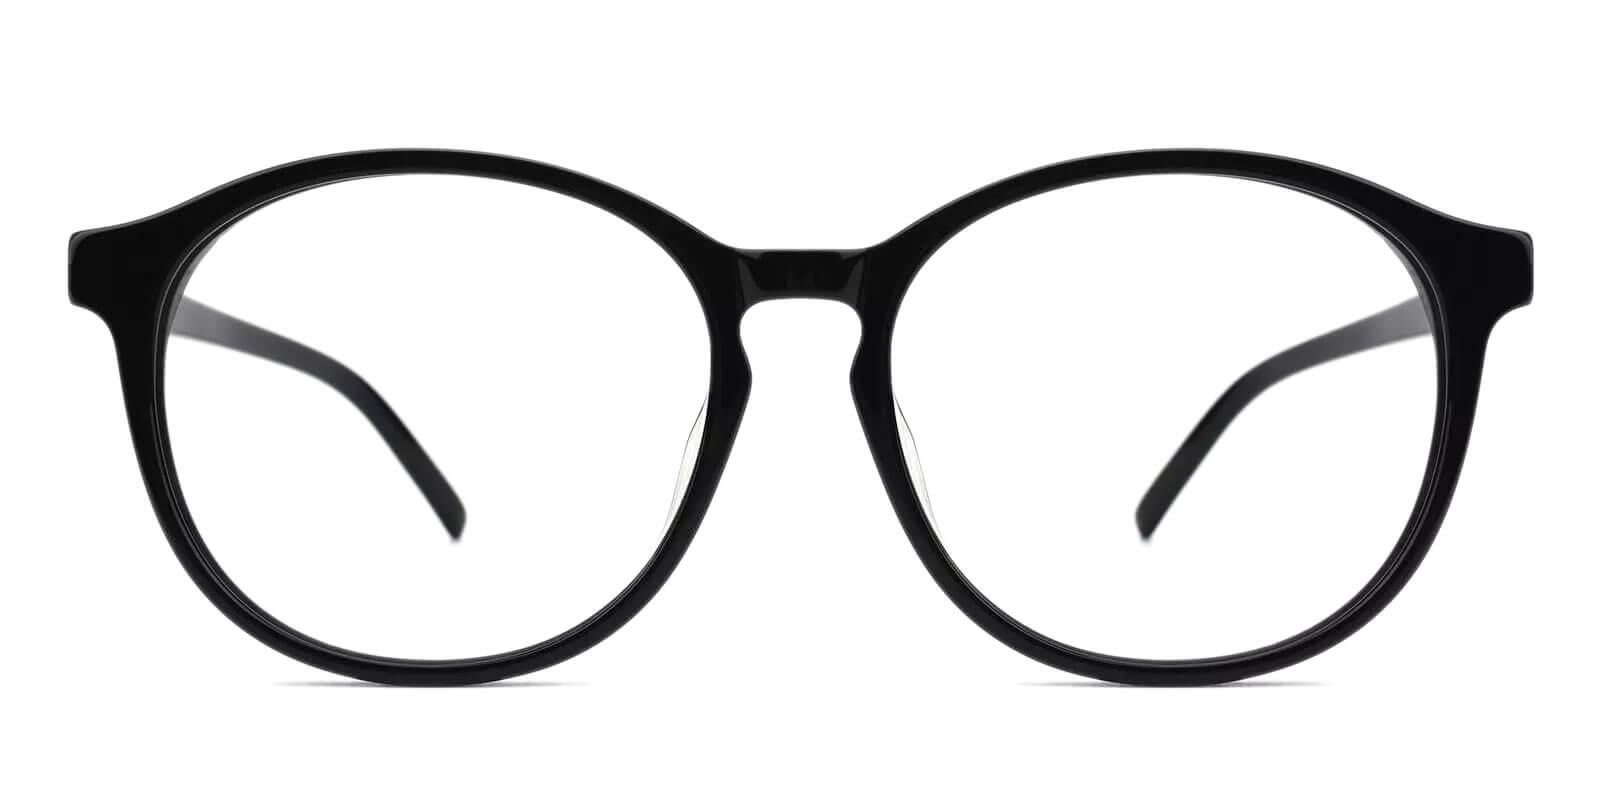 Wasco Black Acetate Eyeglasses , UniversalBridgeFit Frames from ABBE Glasses